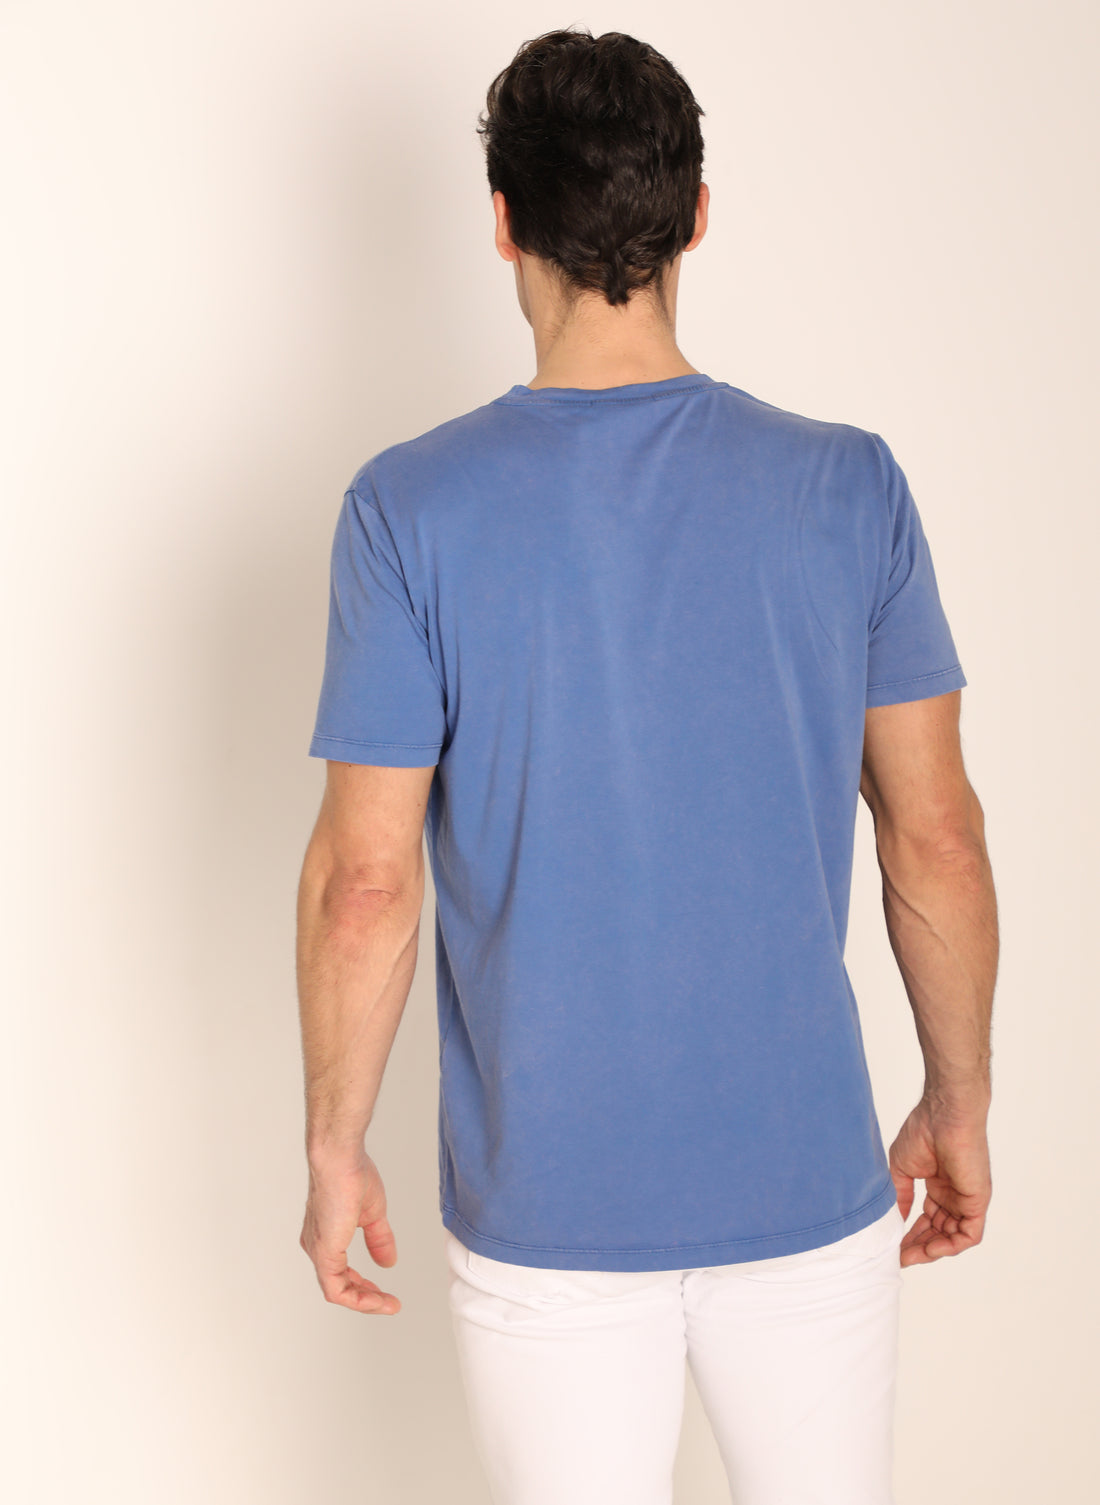 T-shirt teint bleu clair dans le vêtement pour hommes